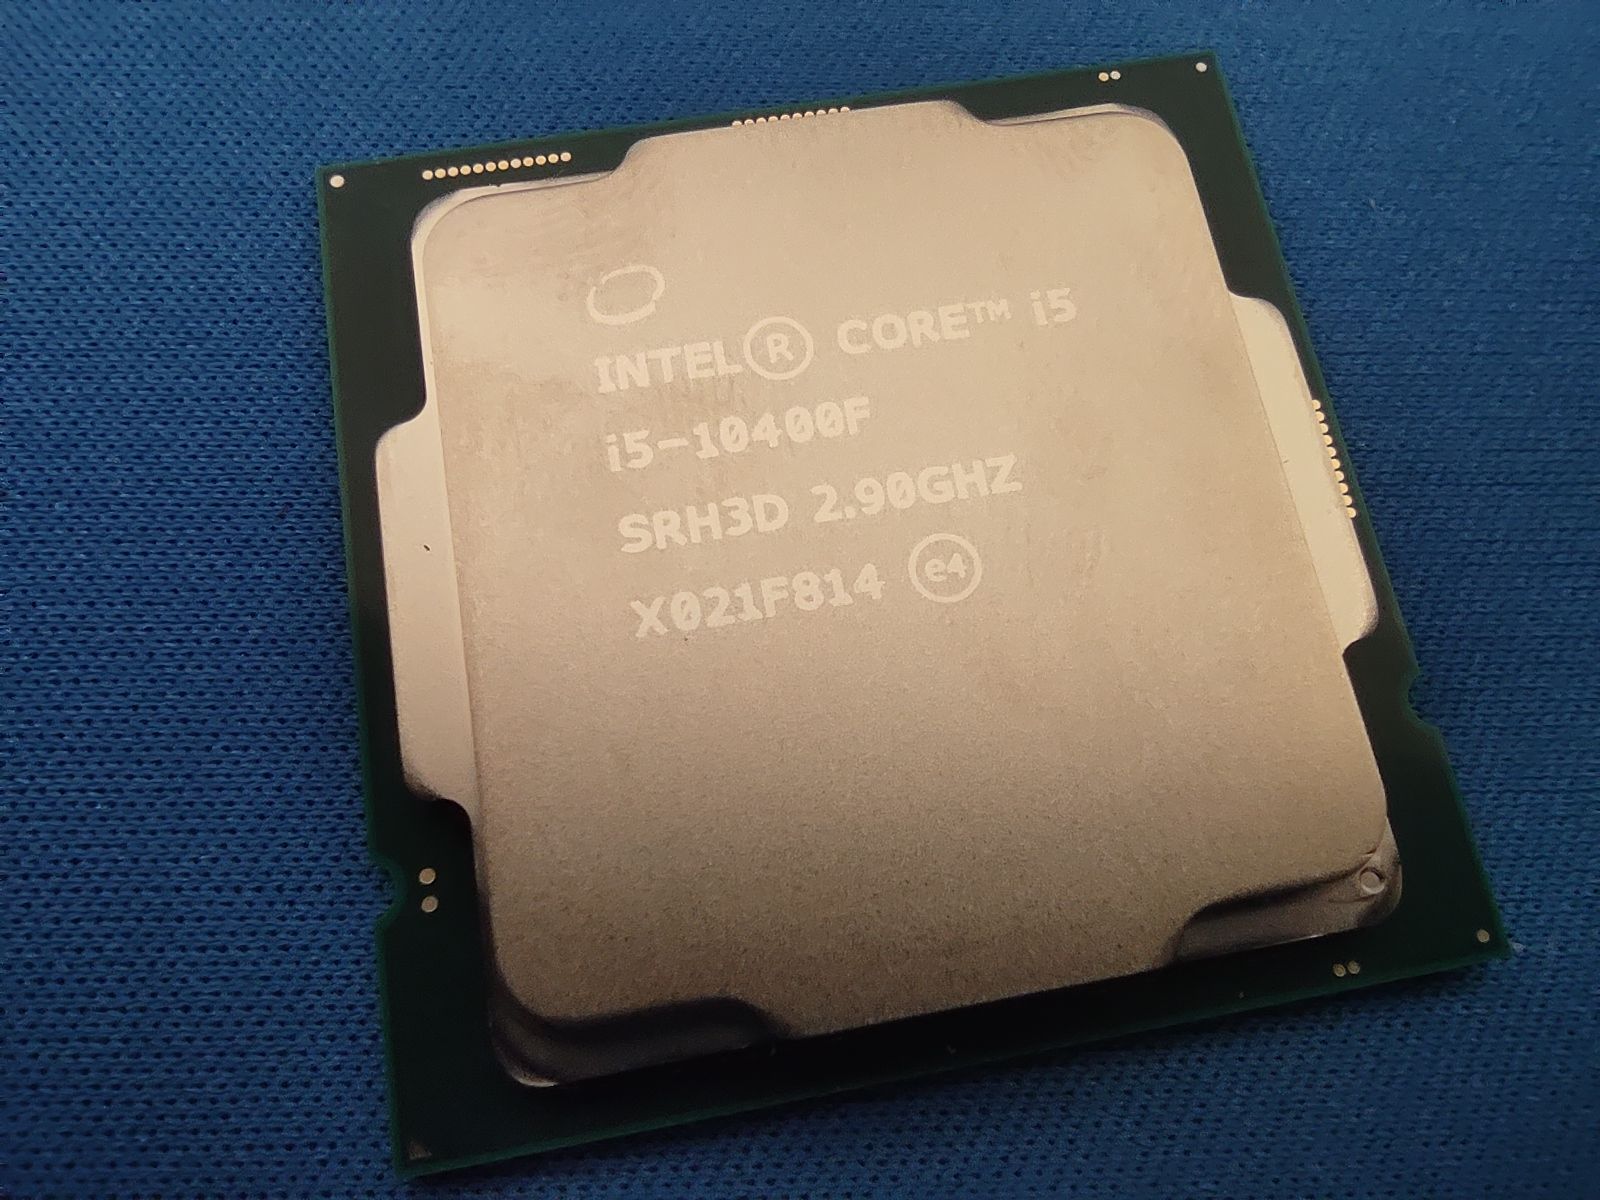 Intel core i5 10400f 2.9 ггц. Core i5 10400f. Процессор Intel Core i5-10400 OEM. I5 10400f OEM. Intel Core 5 10400f.